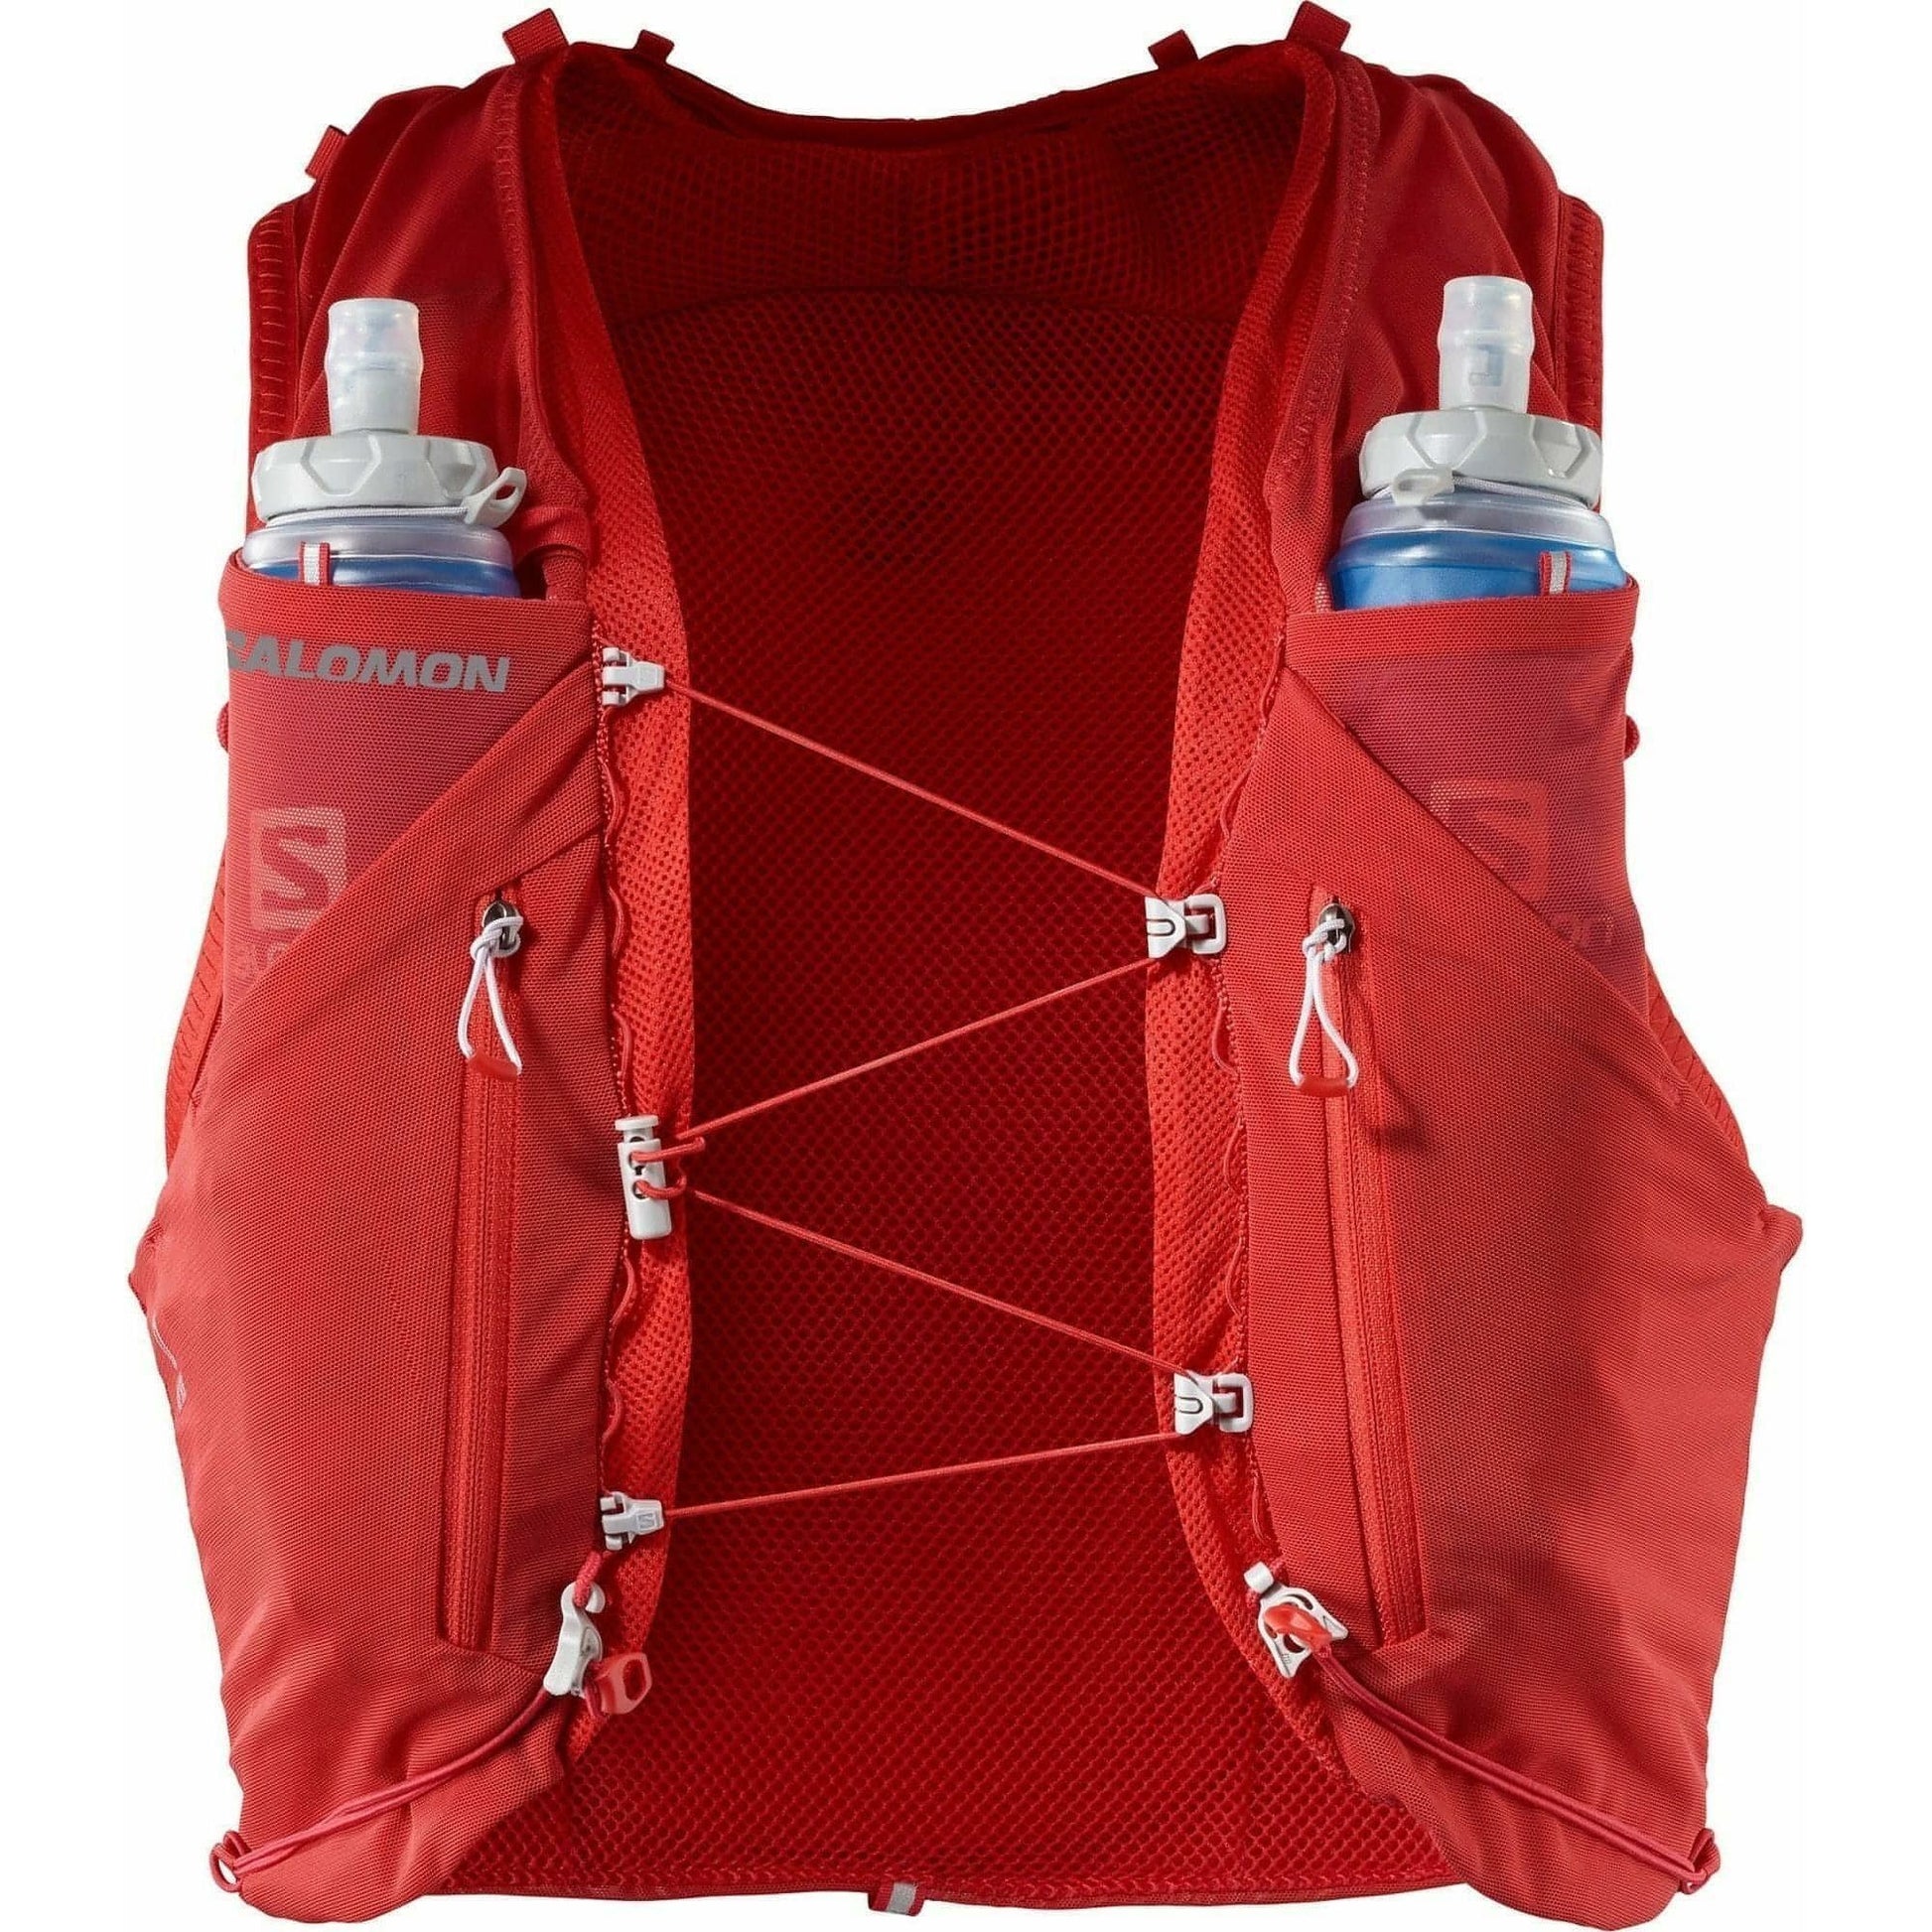 Salomon ADV Skin 12 Set Running Backpack - Red – Start Fitness